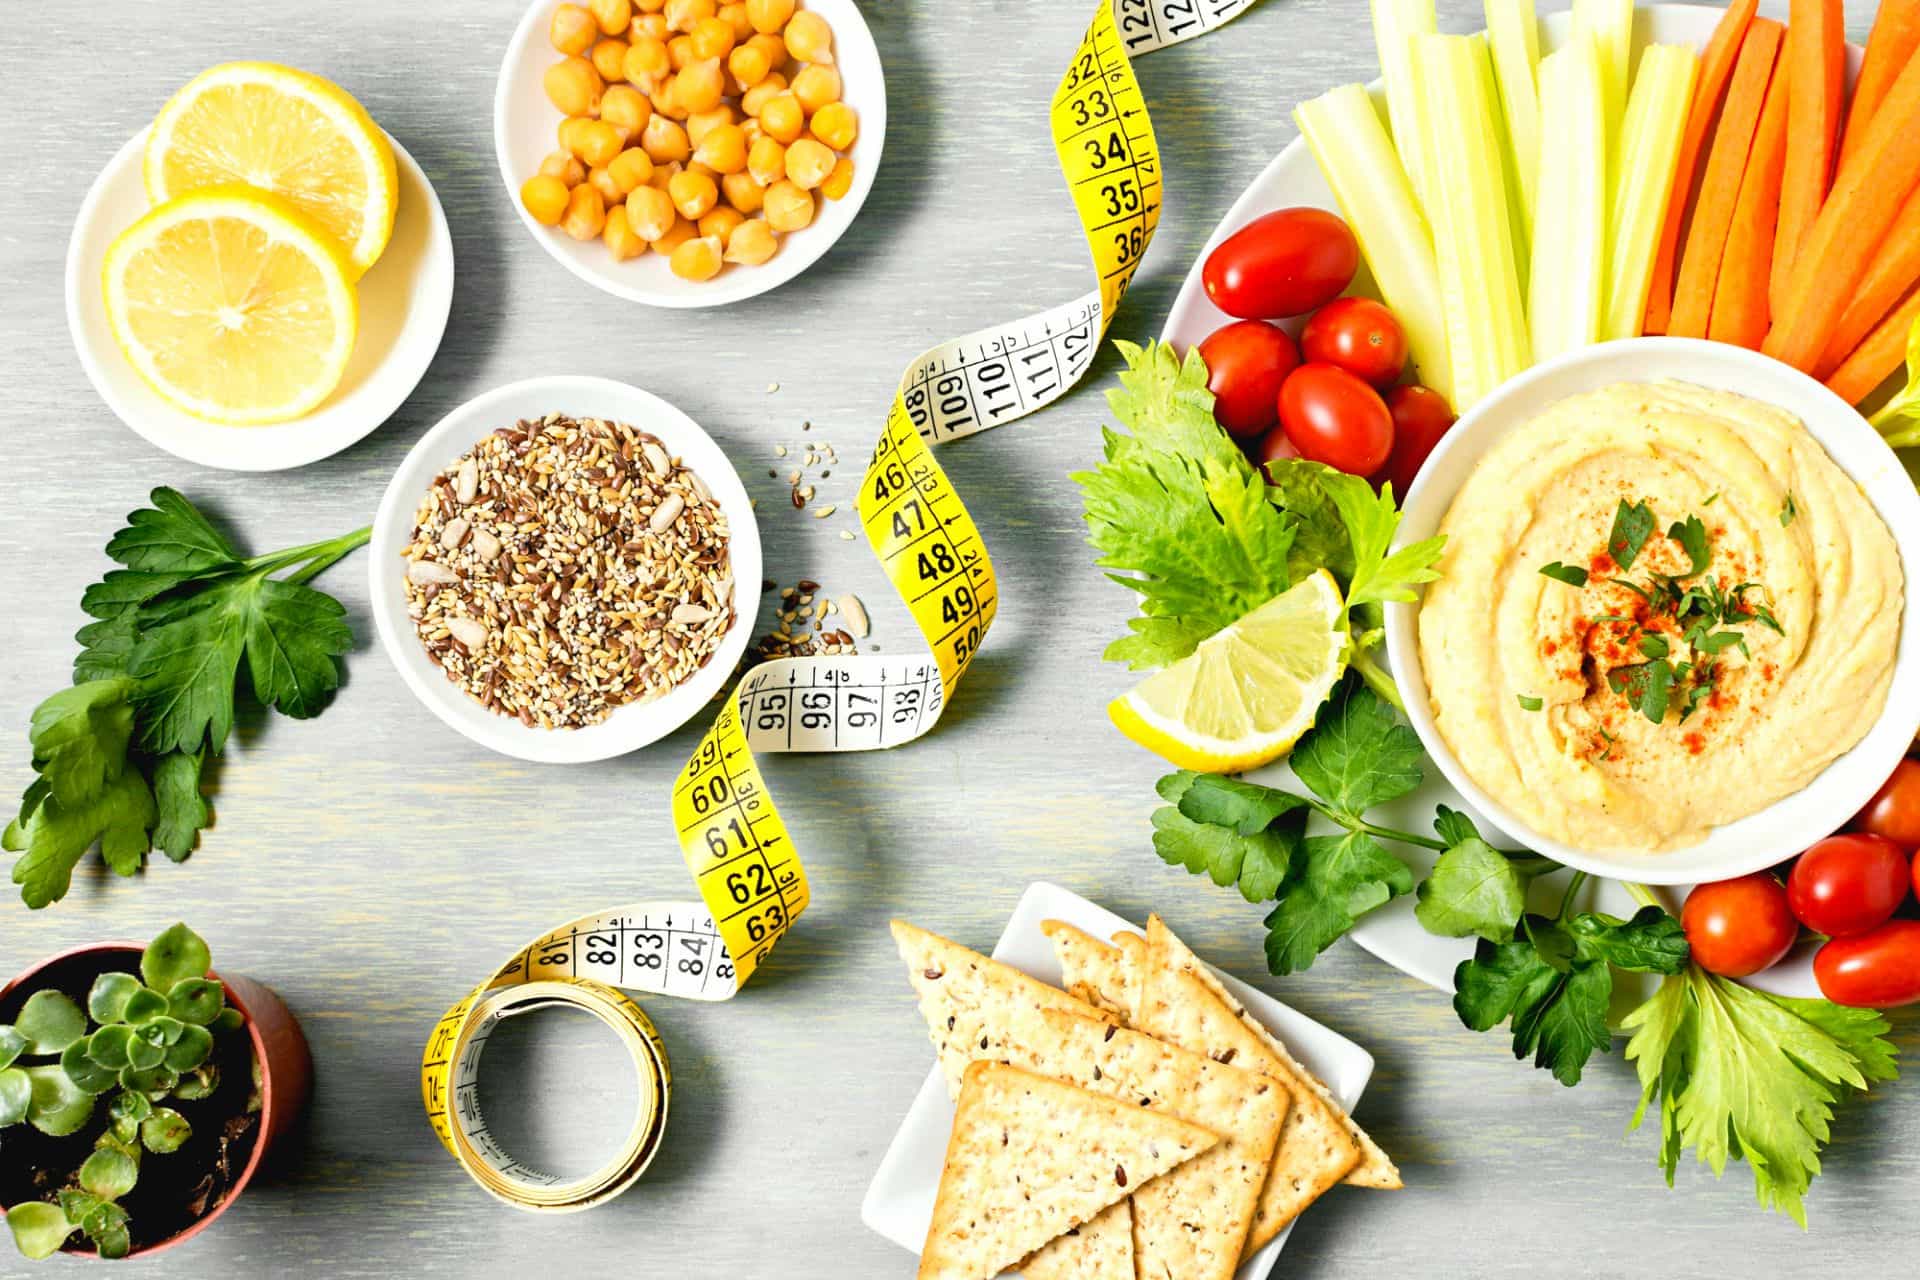 La dieta mediterranea: uno stile di vita per migliorare peso e salute